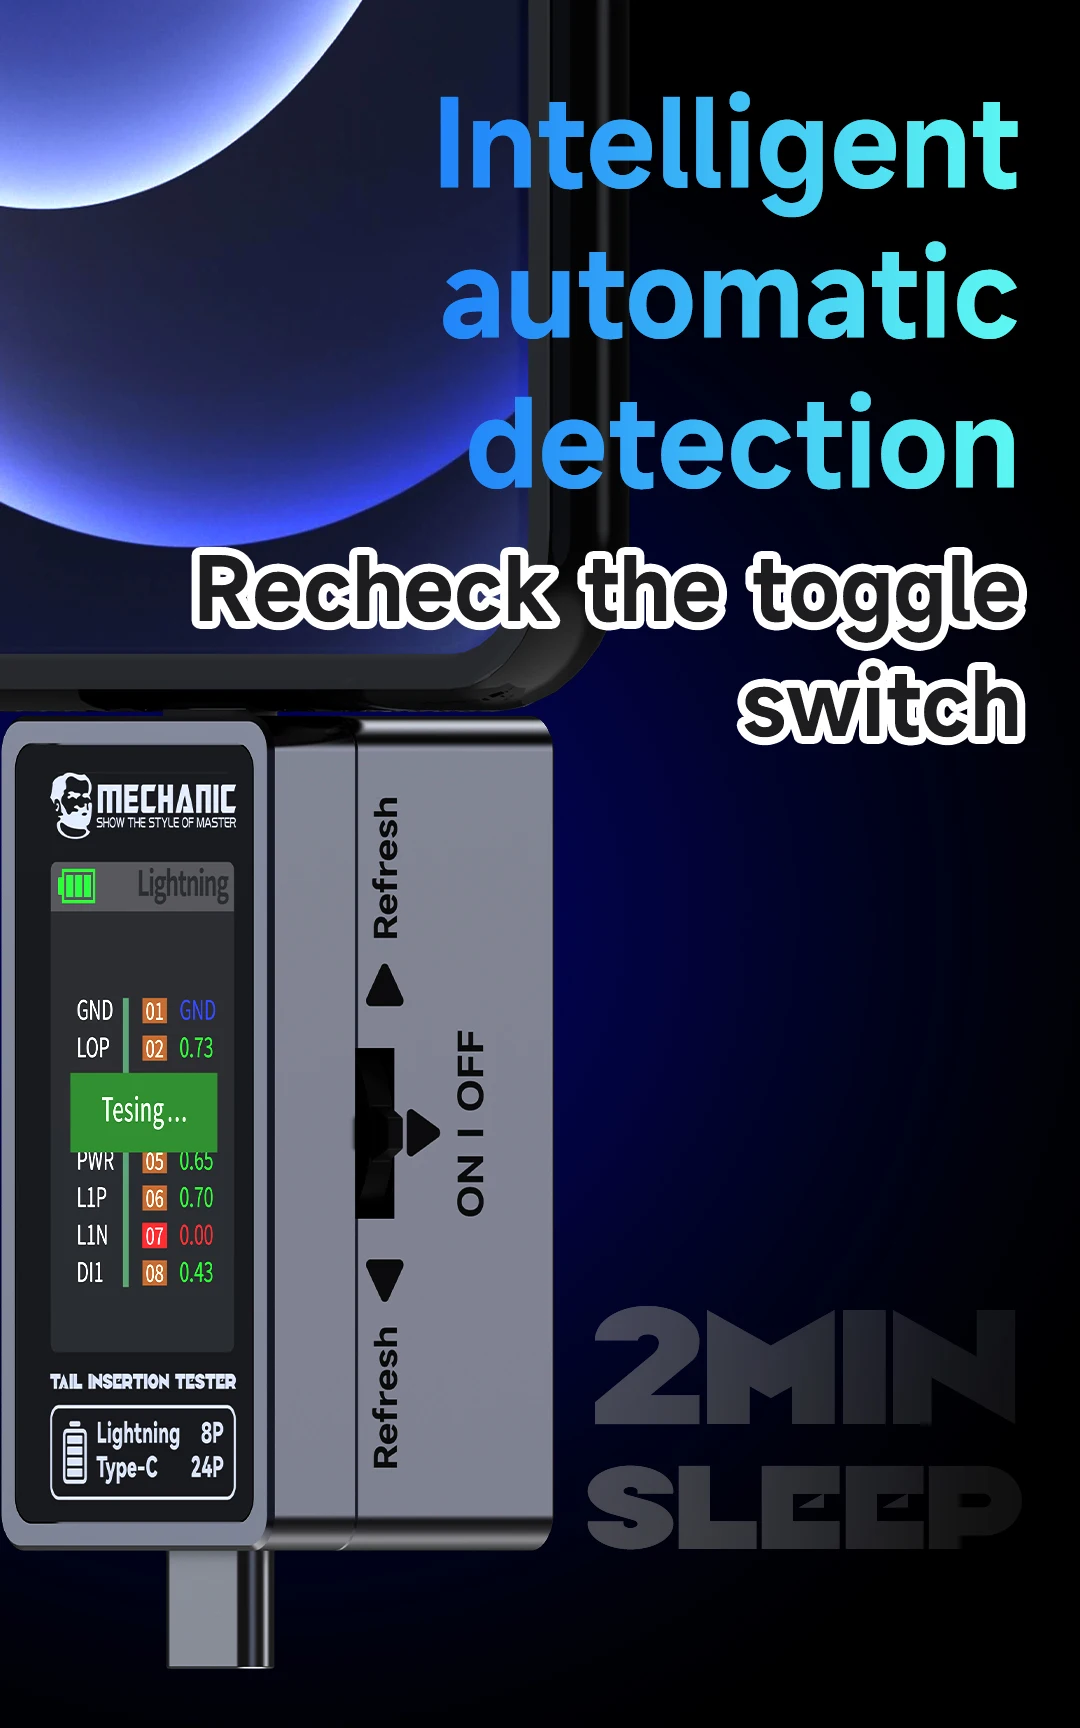 MECHANIC-T824 Mobile Phone Cauda Inserção Detector, HD TFT Display Digital, Detecção Inteligente Automática, Cada Poder Atual Pin